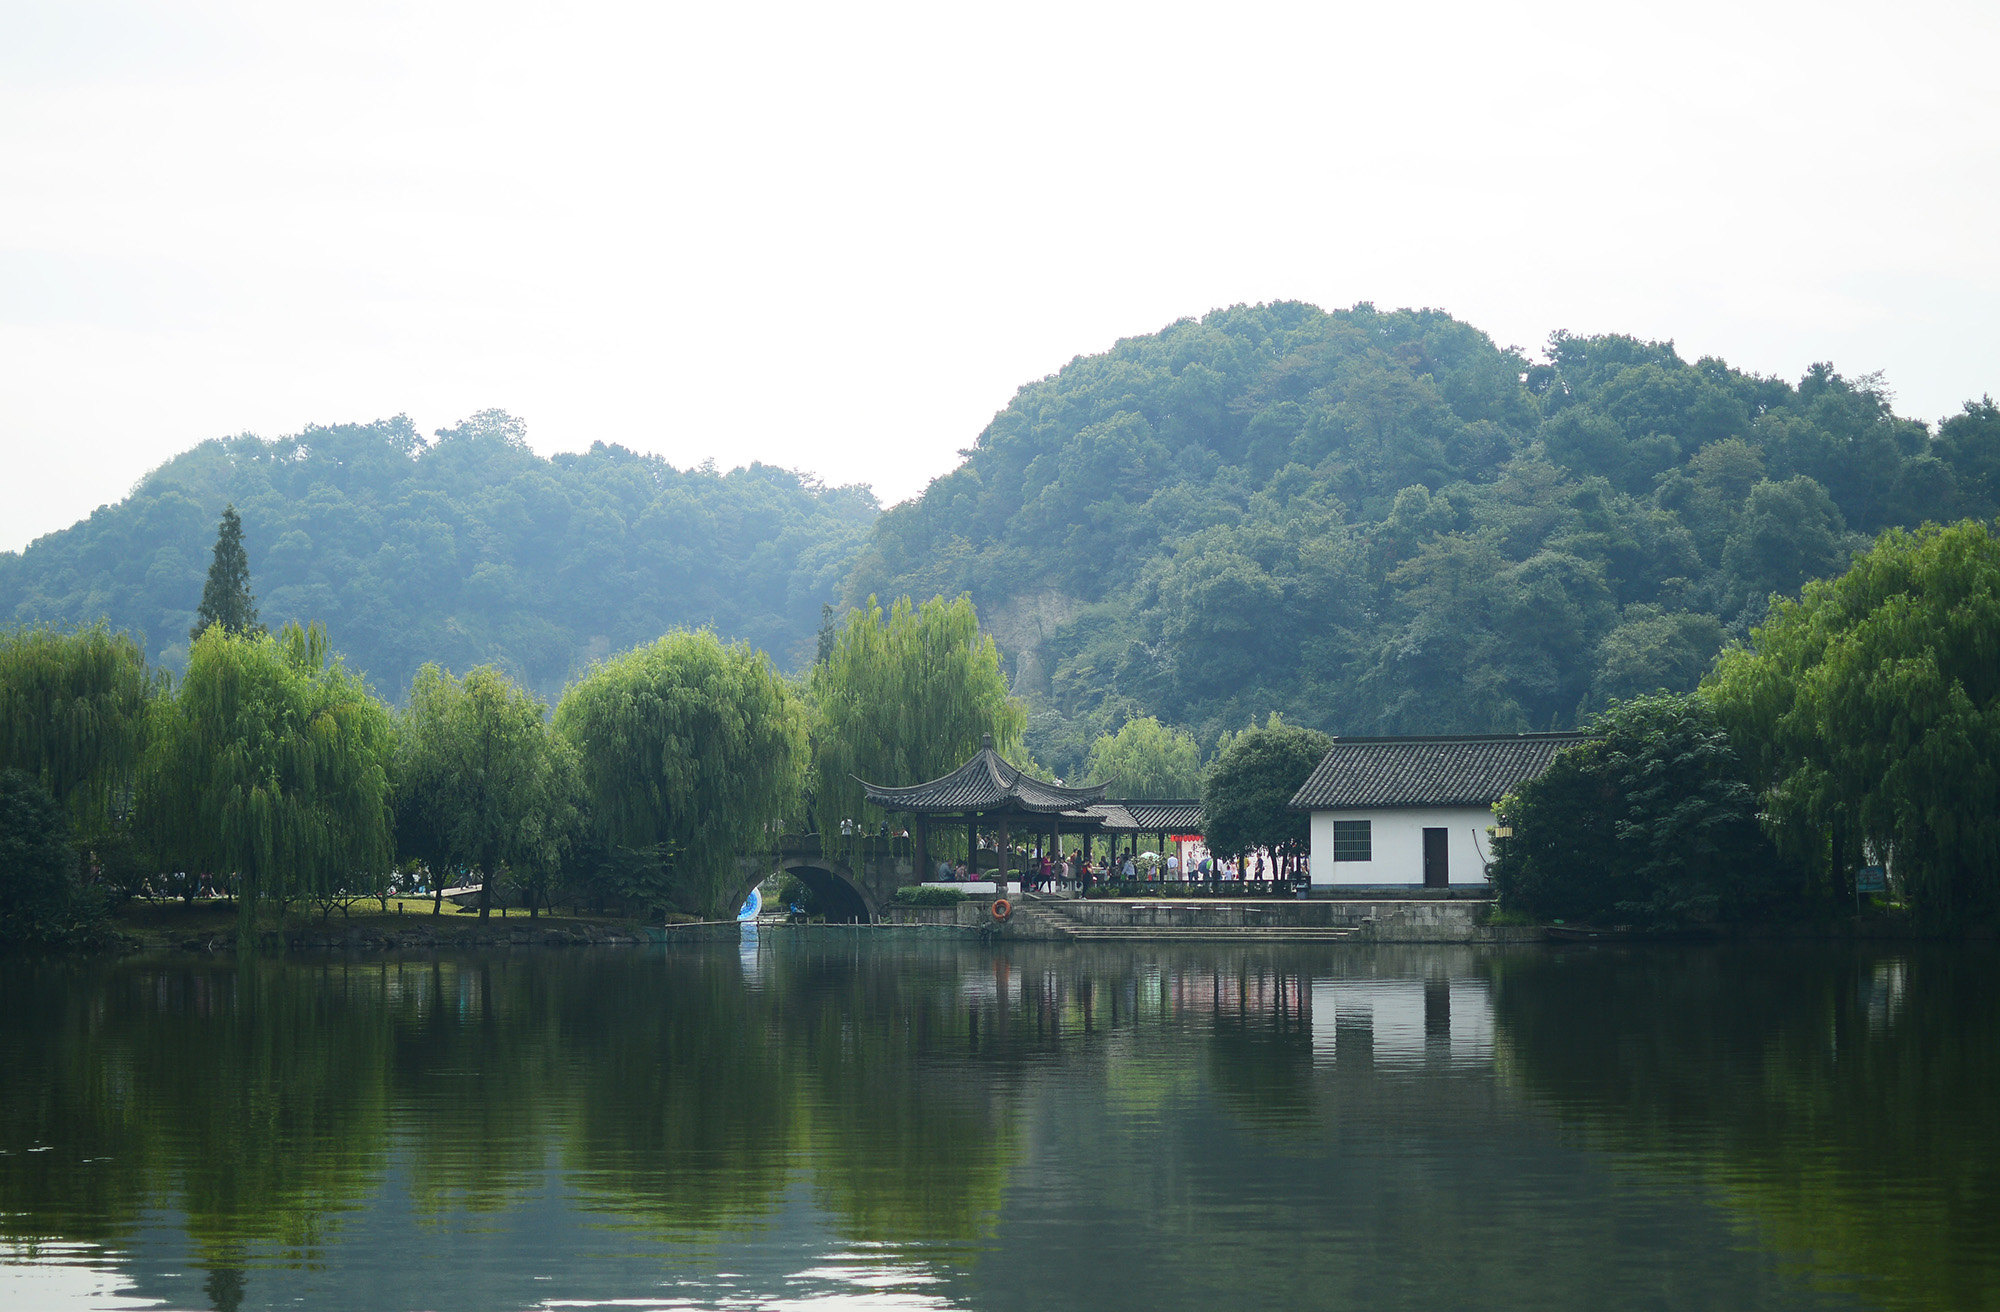 【绍兴东湖风景区】摘自万能的度娘 湖在绍兴古城东约六公里处,以崖壁